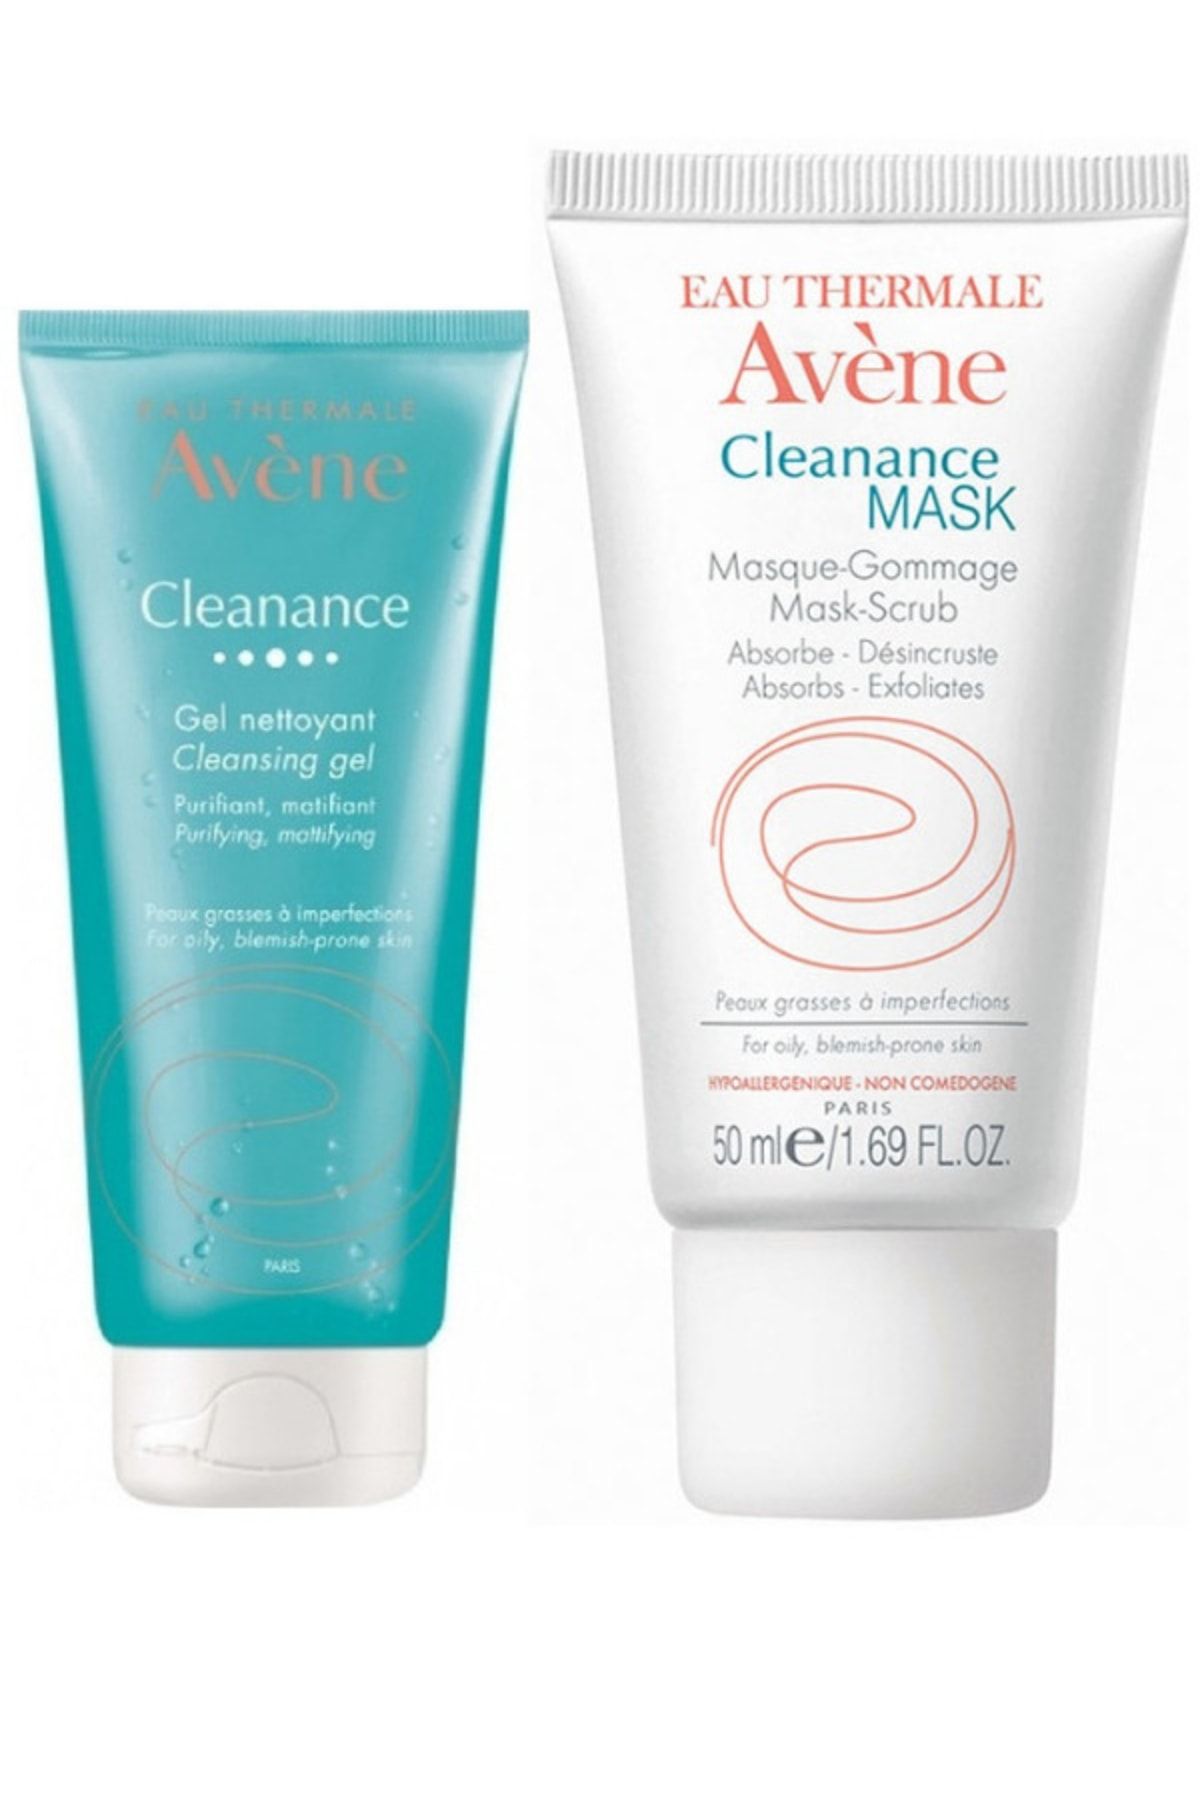 Avene Cleanance Temizleme Jeli 200 Ml - Cleanance Arındırıcı Maske 50 Ml